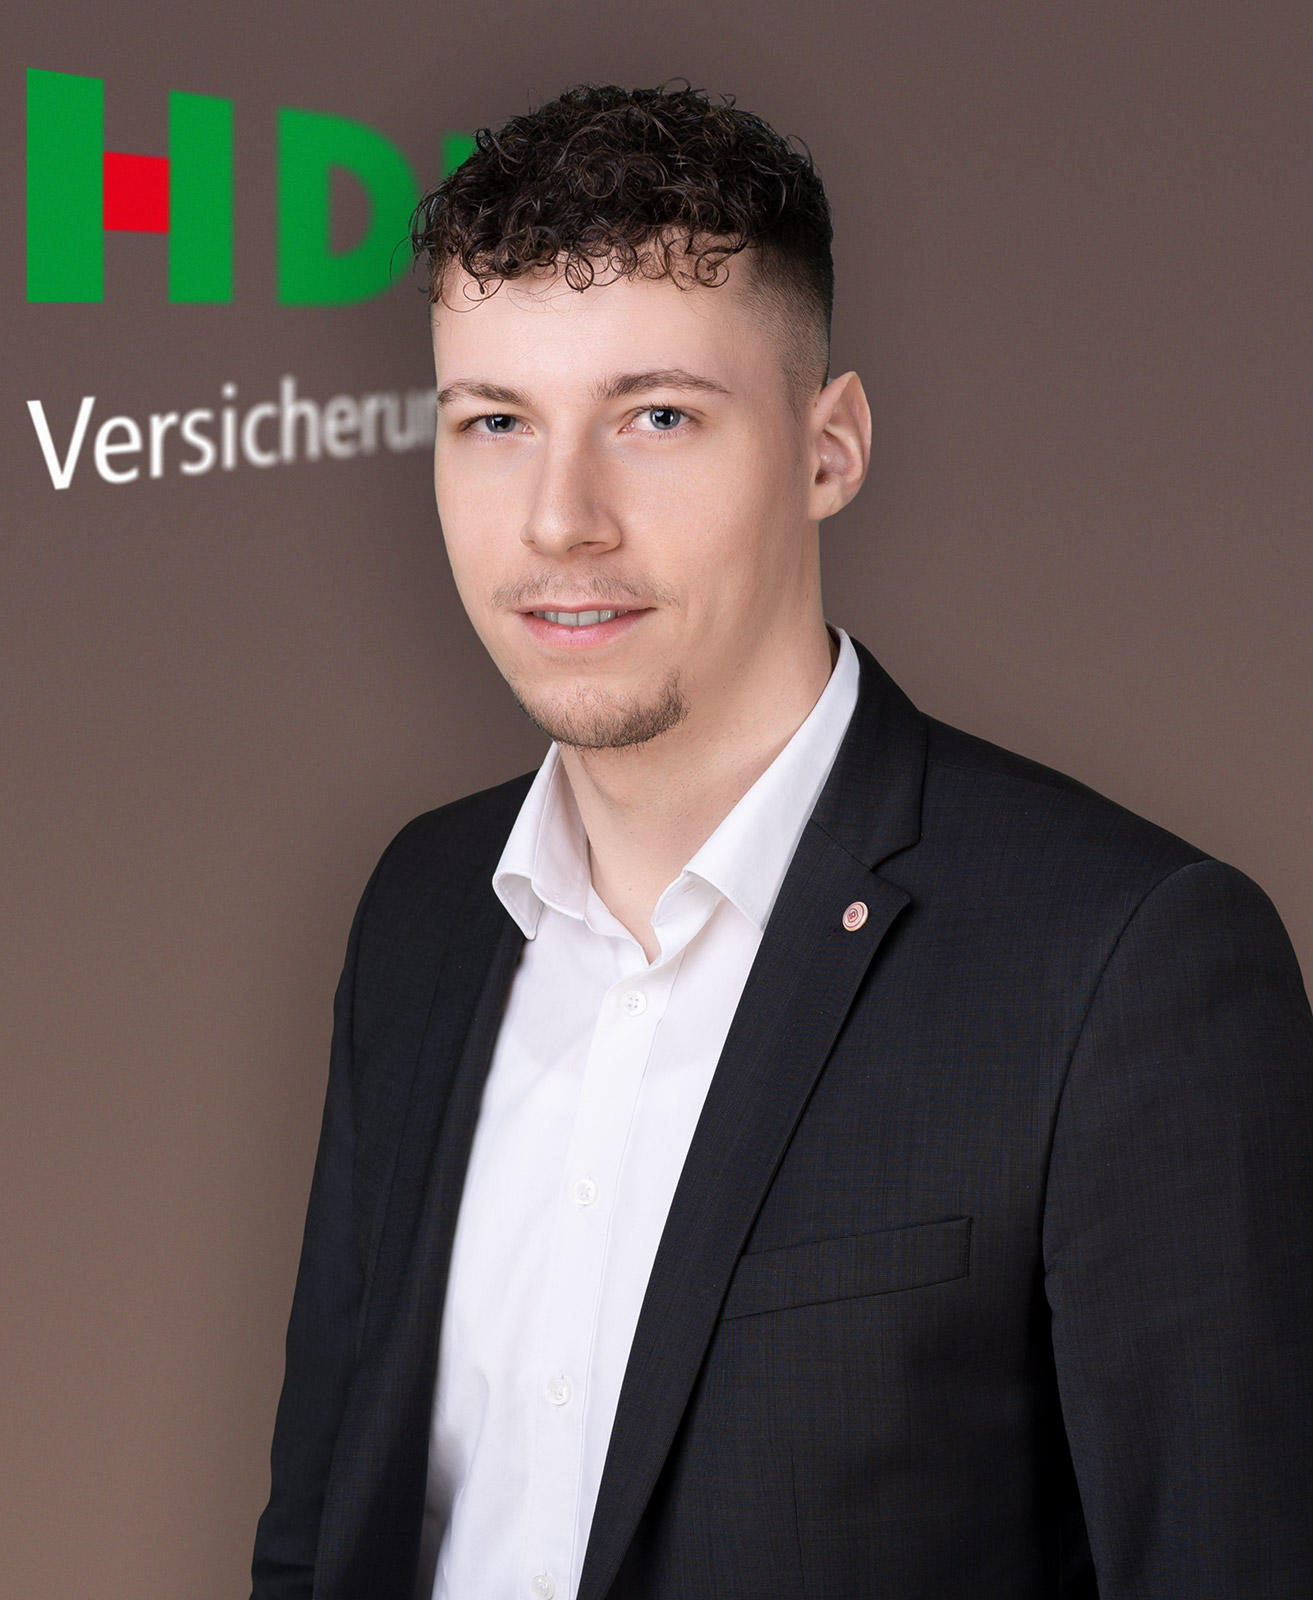 Kundenbild groß 8 HDI Versicherungen: Andreas Reichel